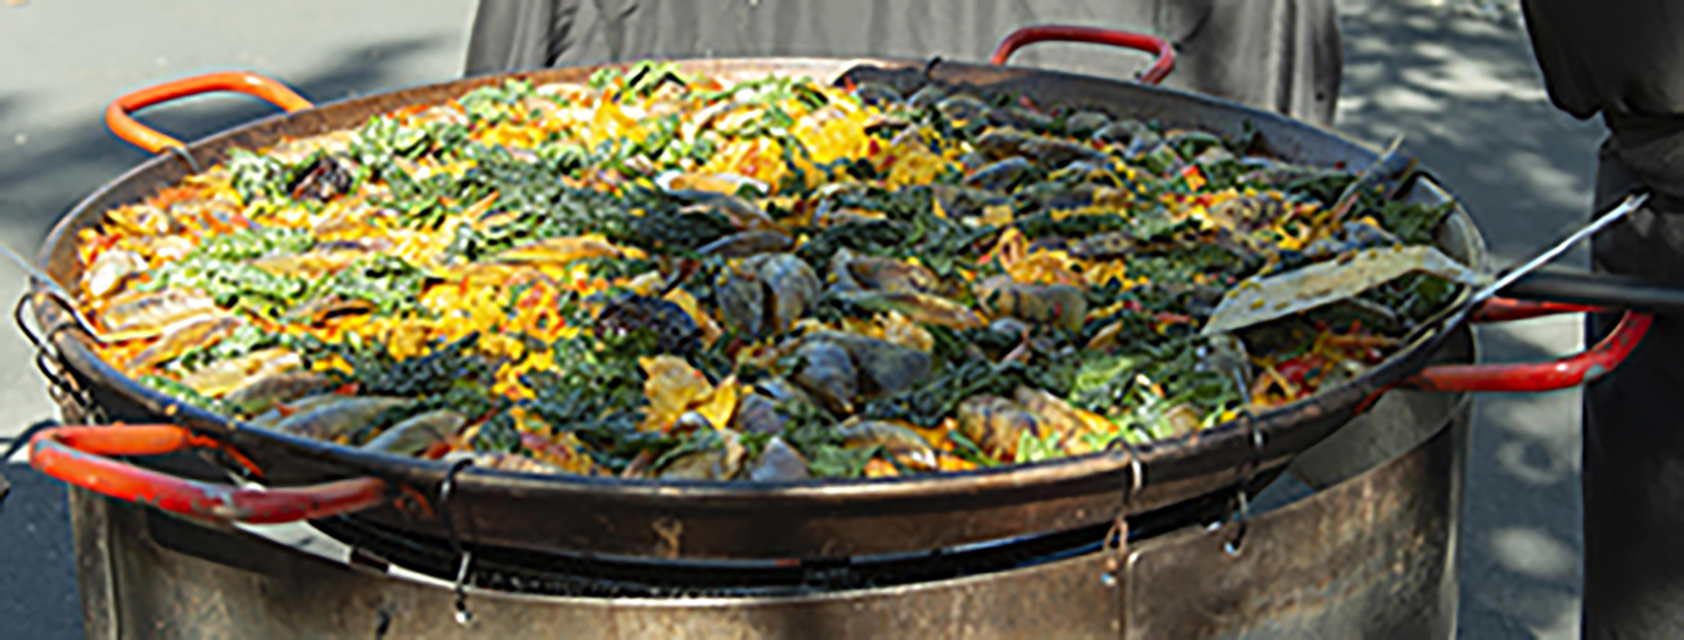 big pan of Gerards paella